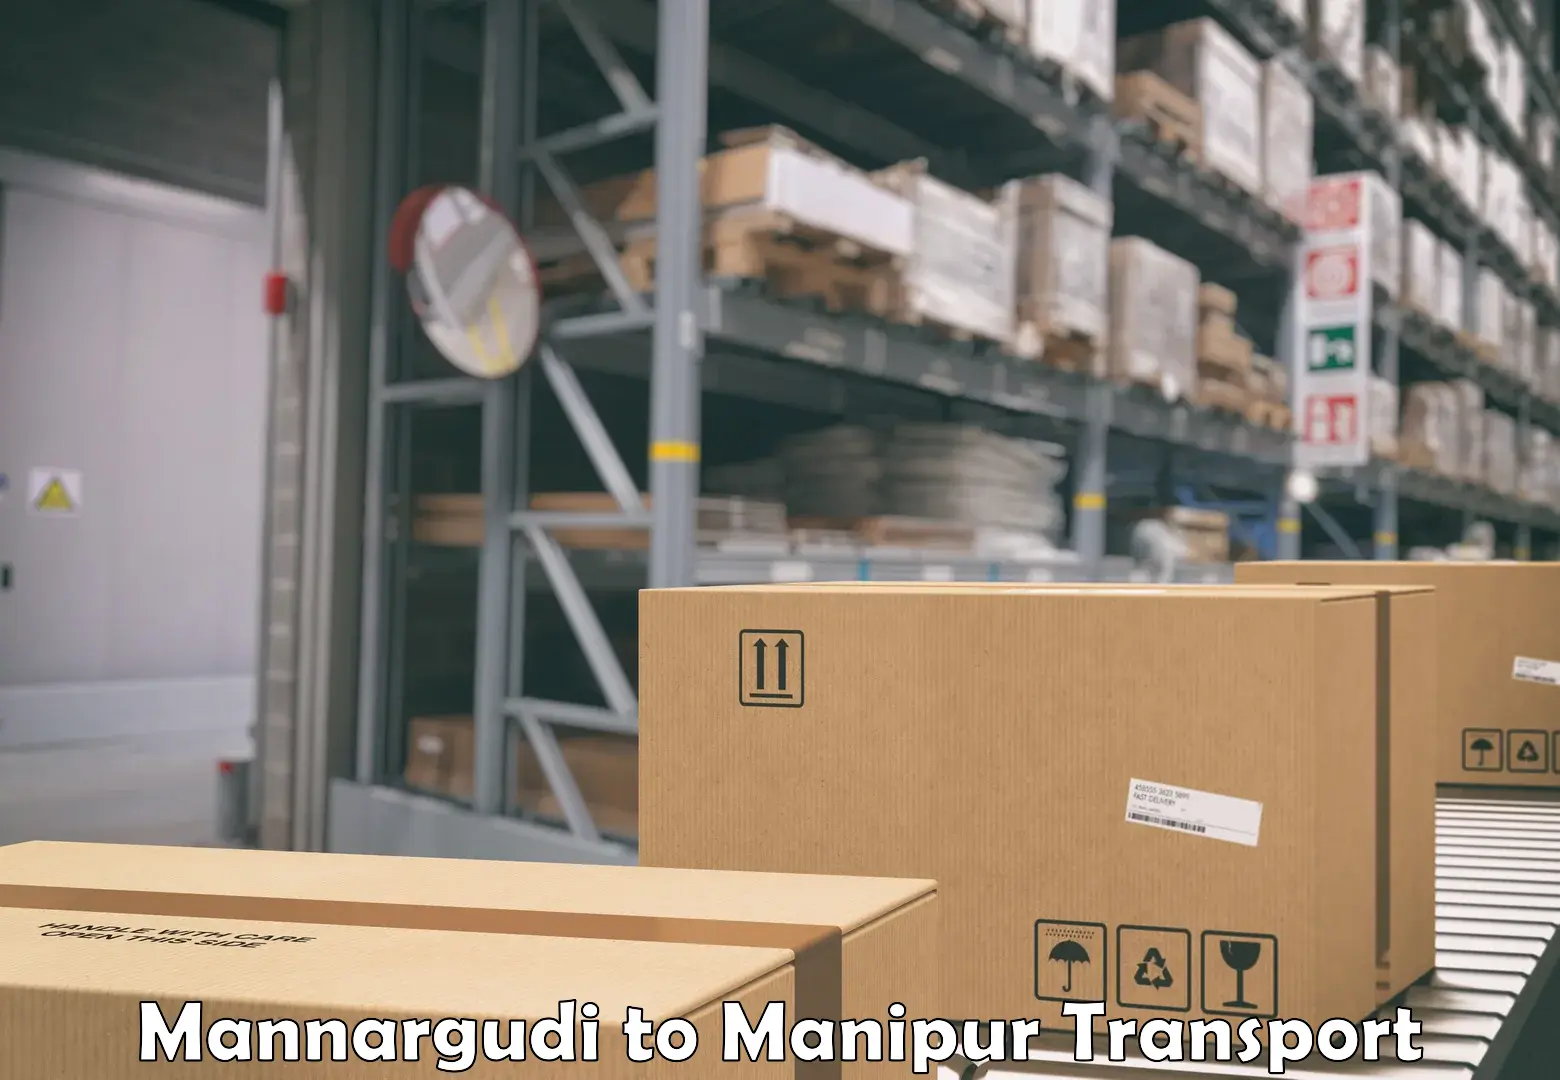 Online transport service Mannargudi to Chandel